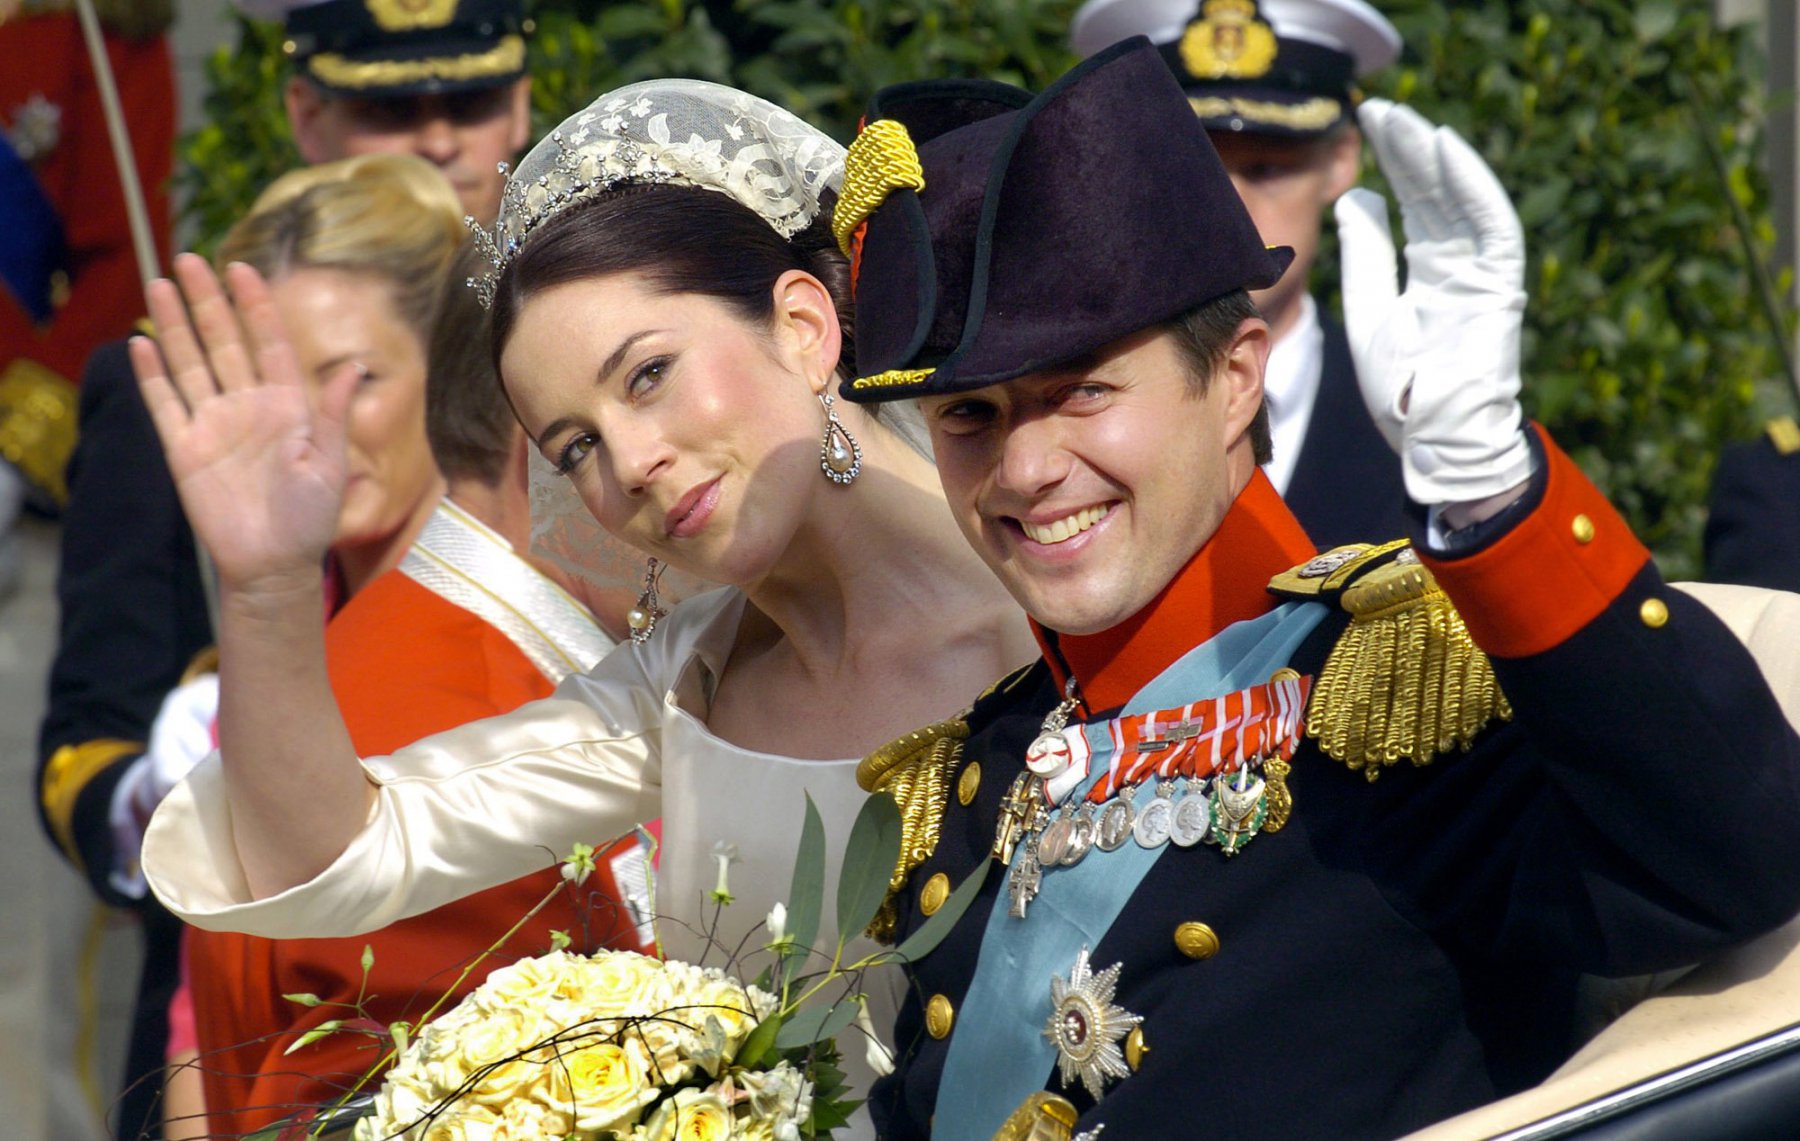 Kronprinz Frederik von Dänemark und seine Frau Prinzessin Mary fahren nach der Trauung im  Dom in Kopenhagen in einer offenen Kutsche nach Schloss Amalienborg. Foto: Boris Roessler/dpa